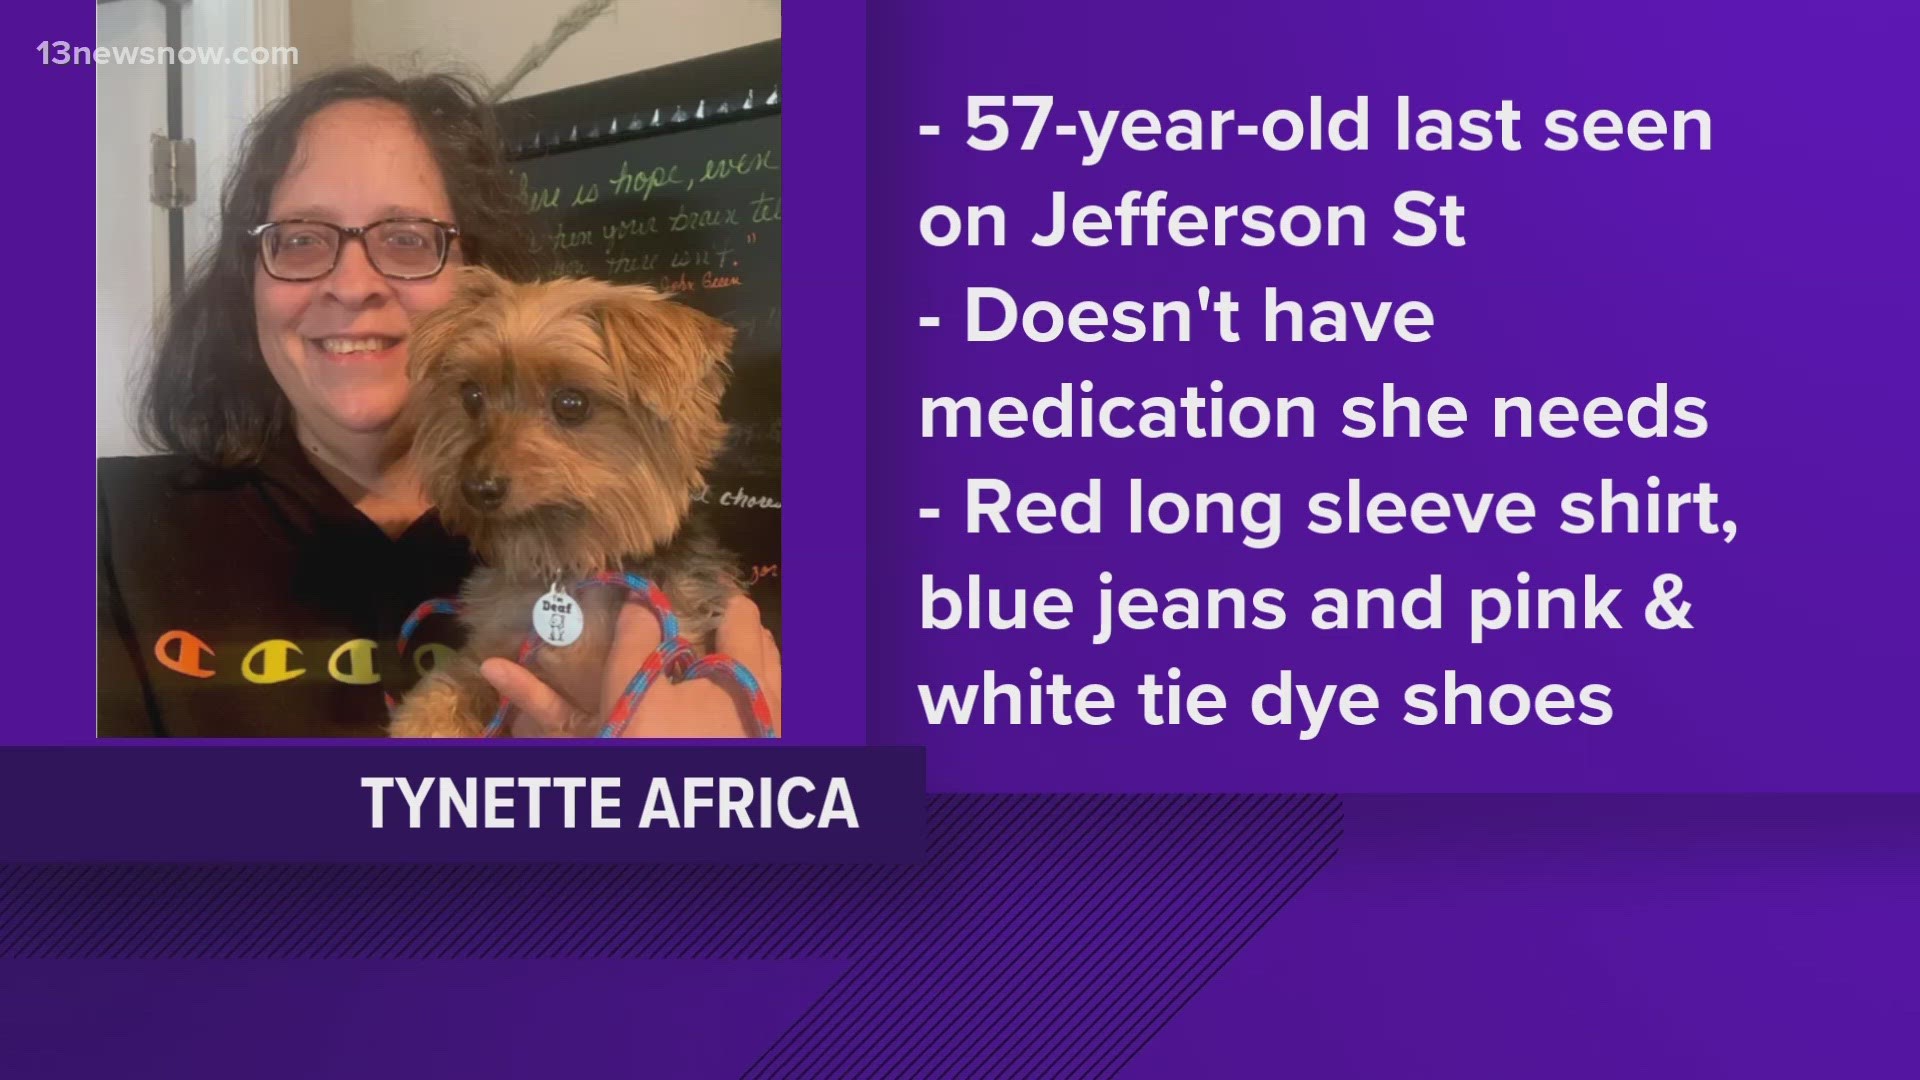 Tynette Africa was last seen on Jefferson Street.